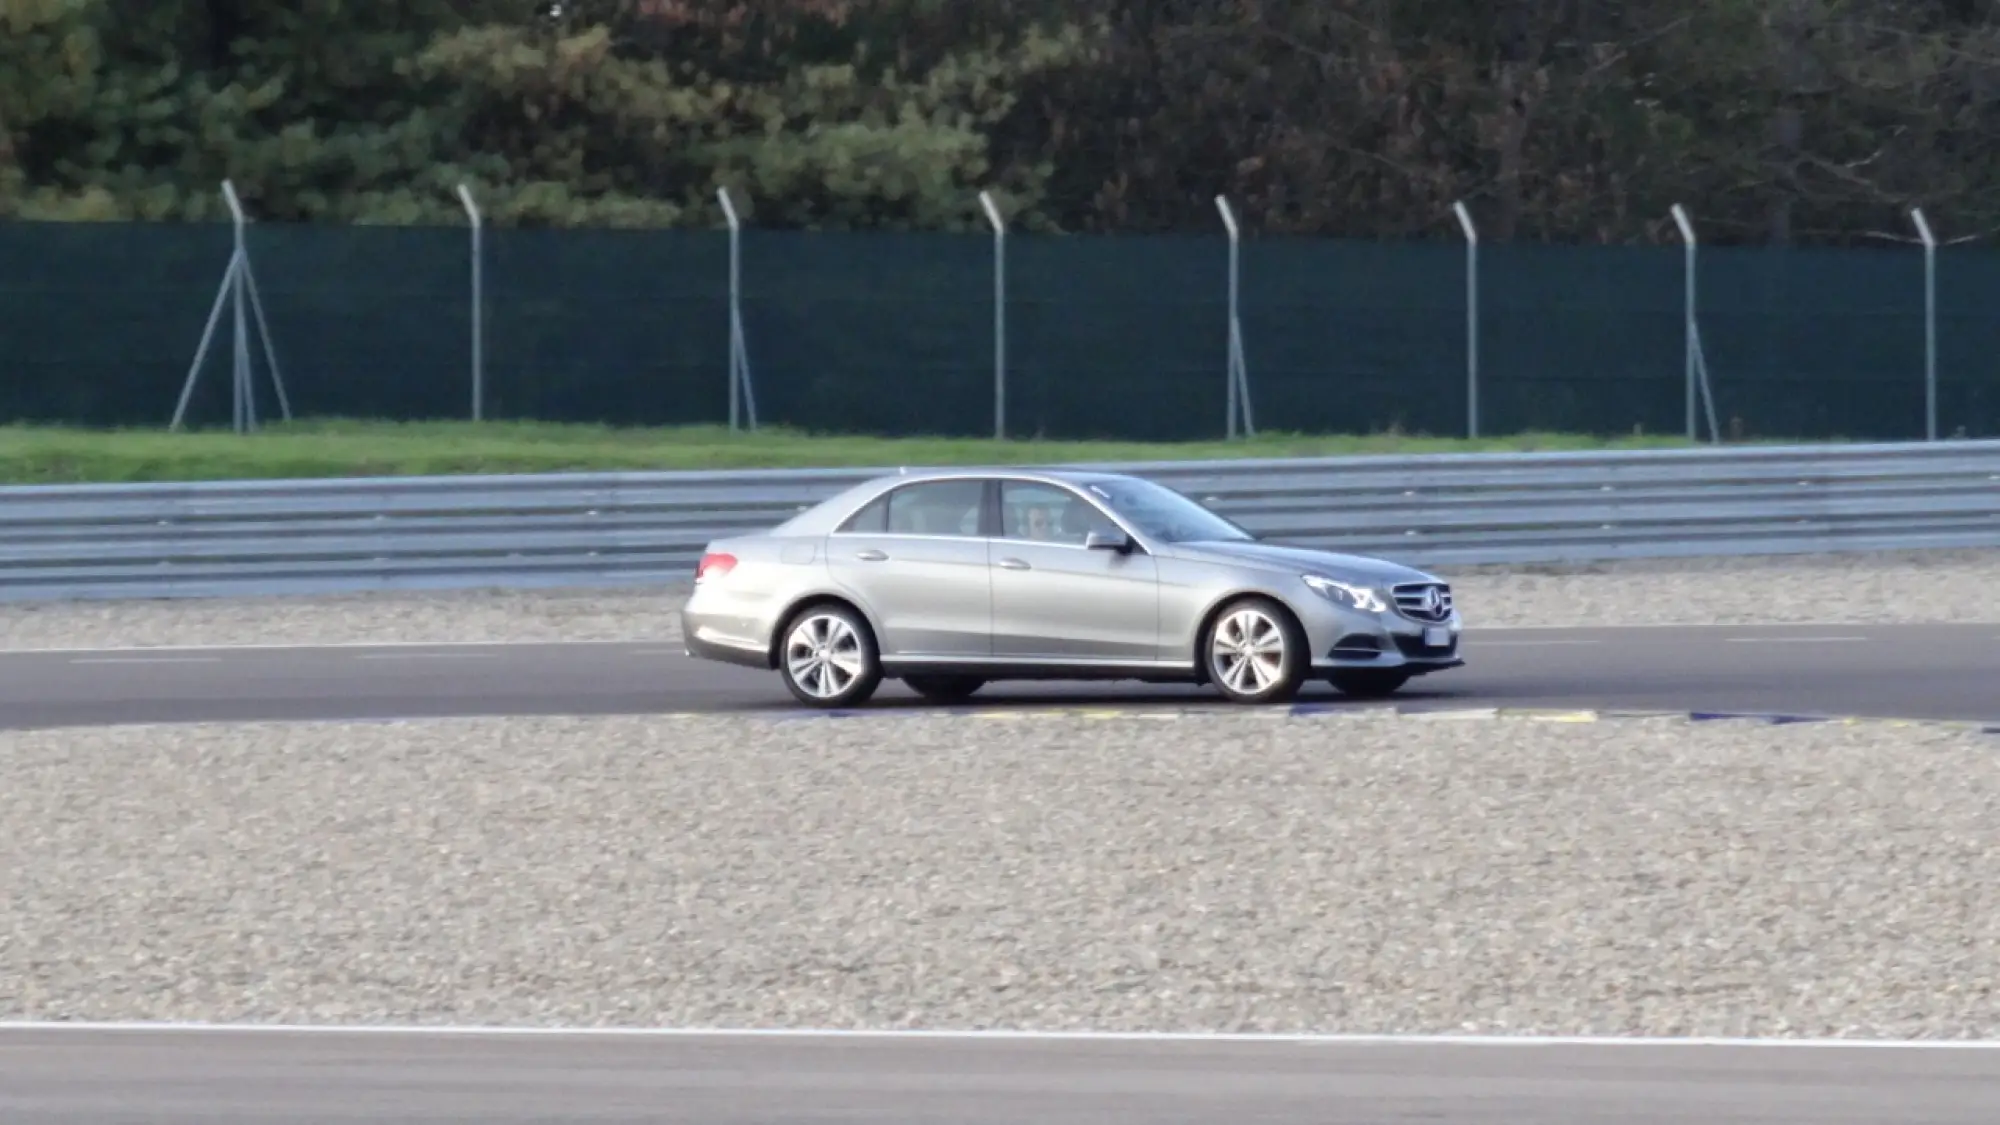 Mercedes Classe E BlueTEC Hybrid - Primo contatto - 46